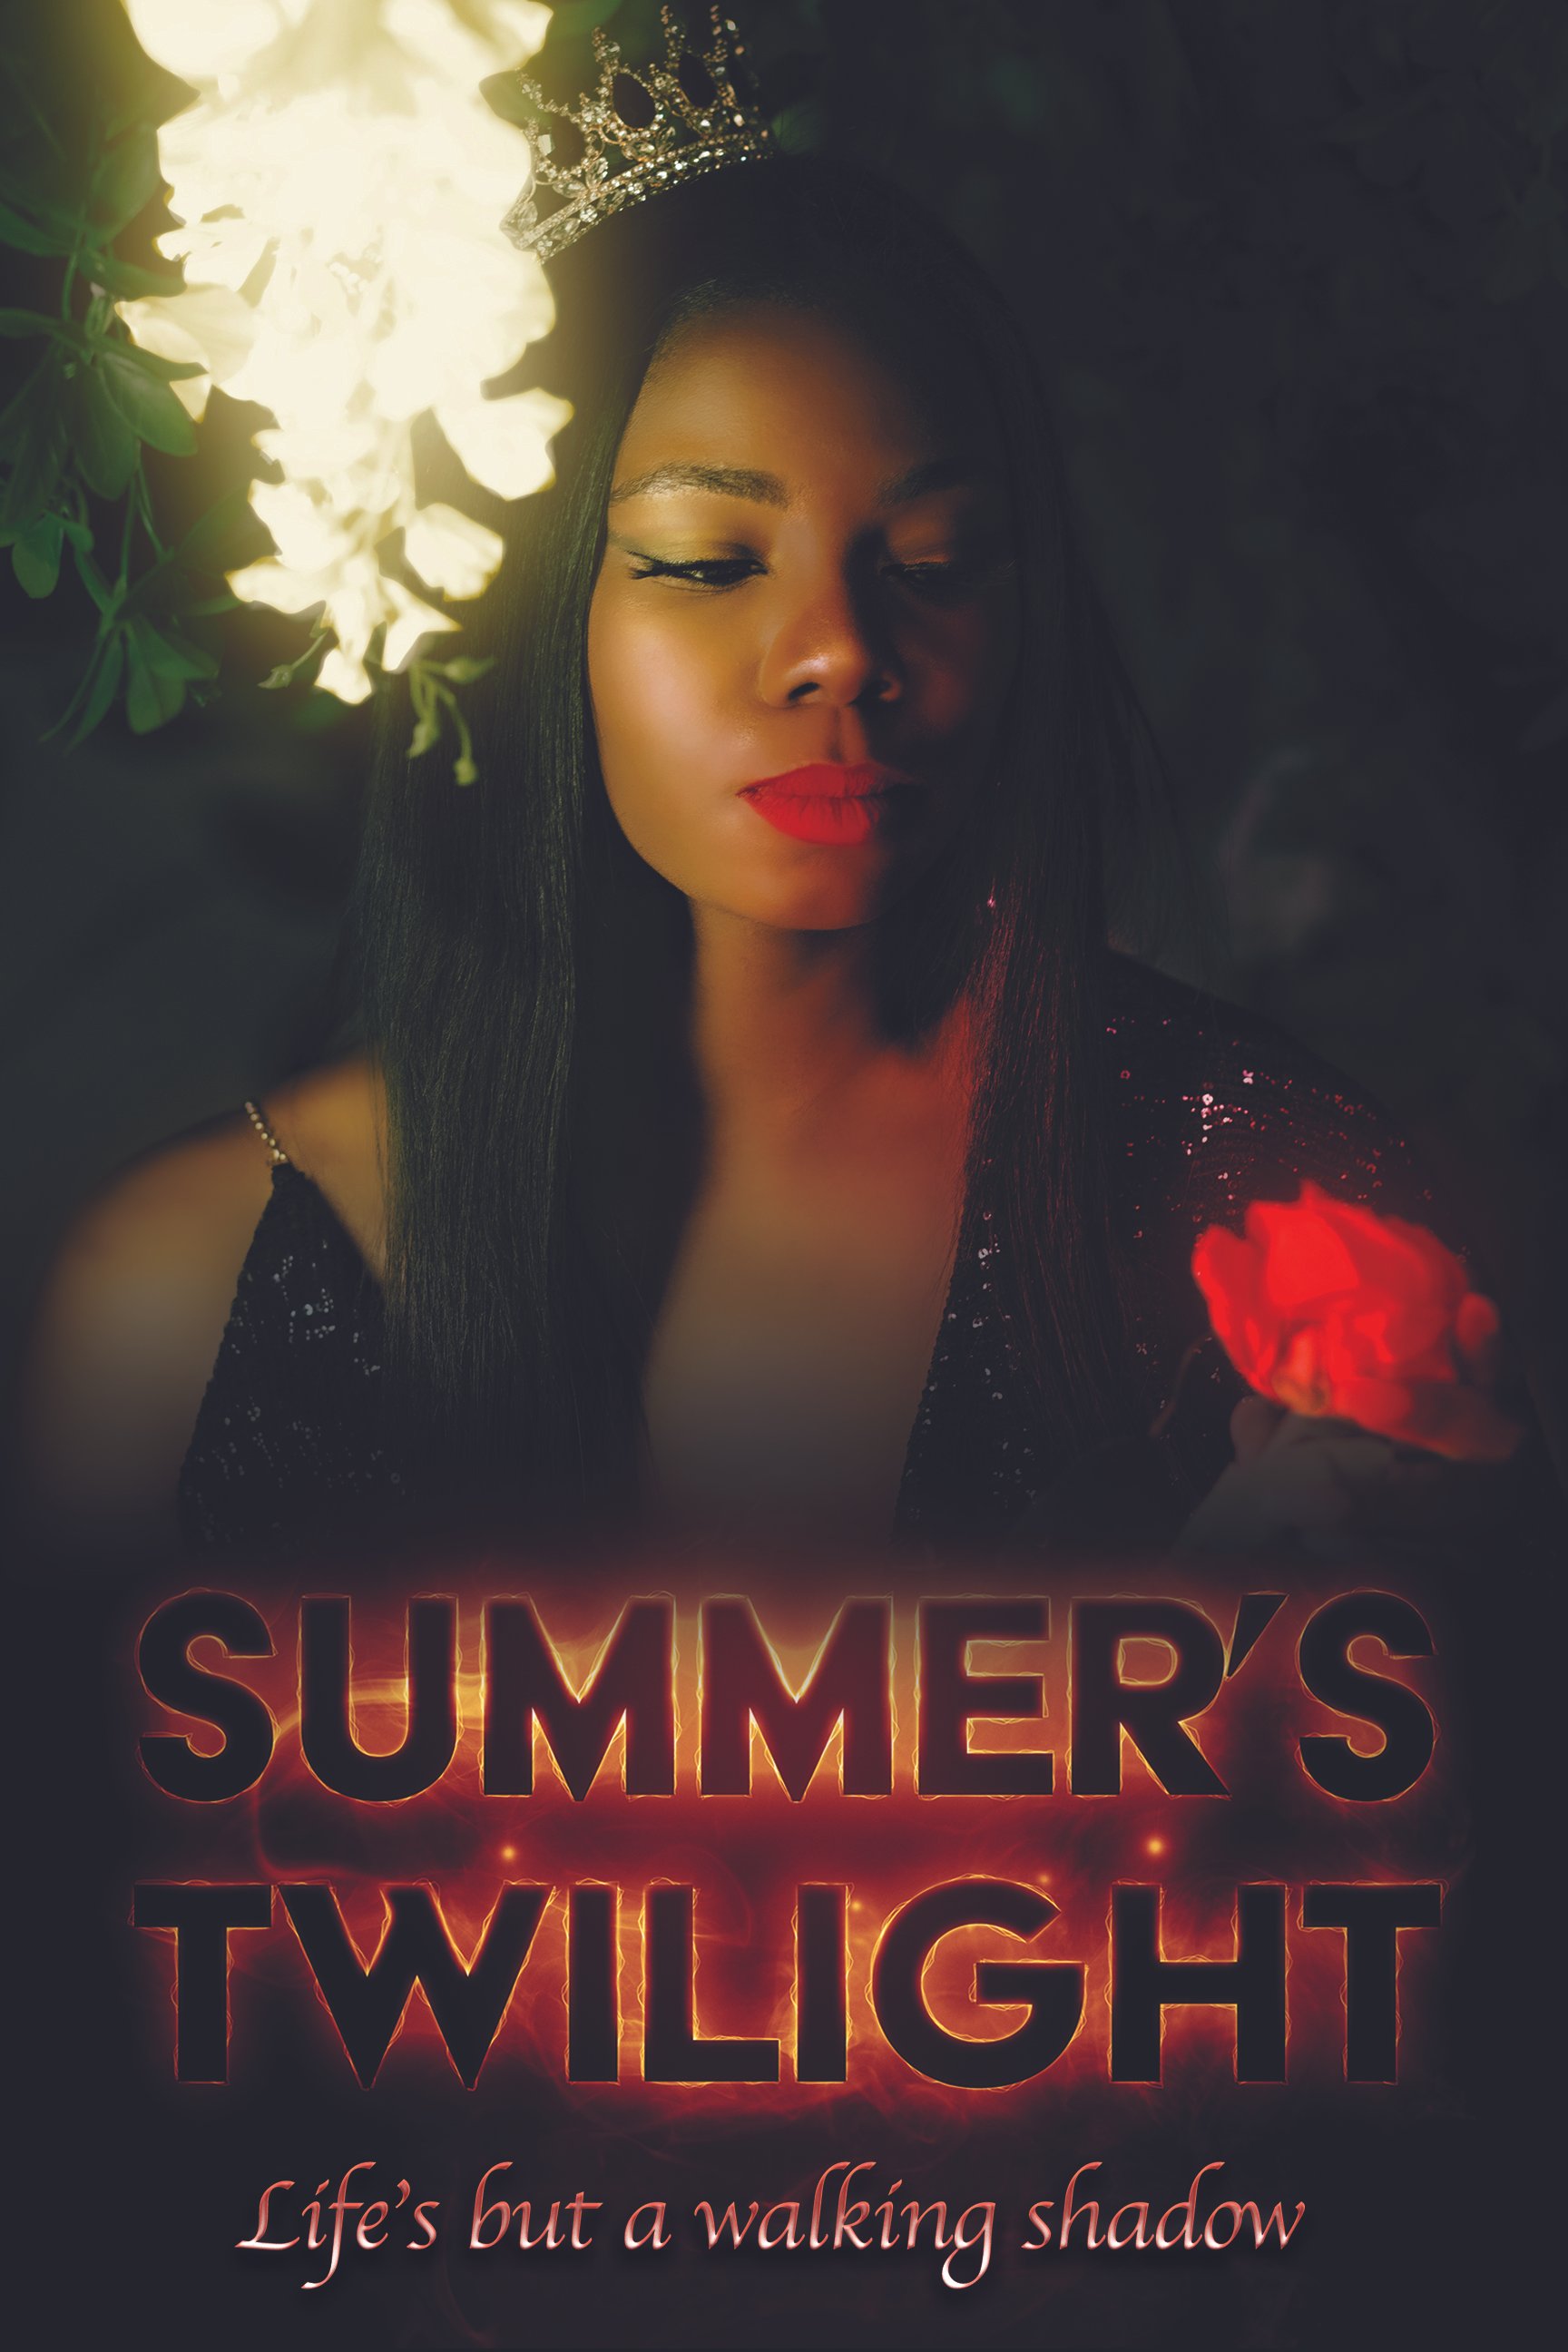 Summers Twilight Poster - Queen copy.jpg